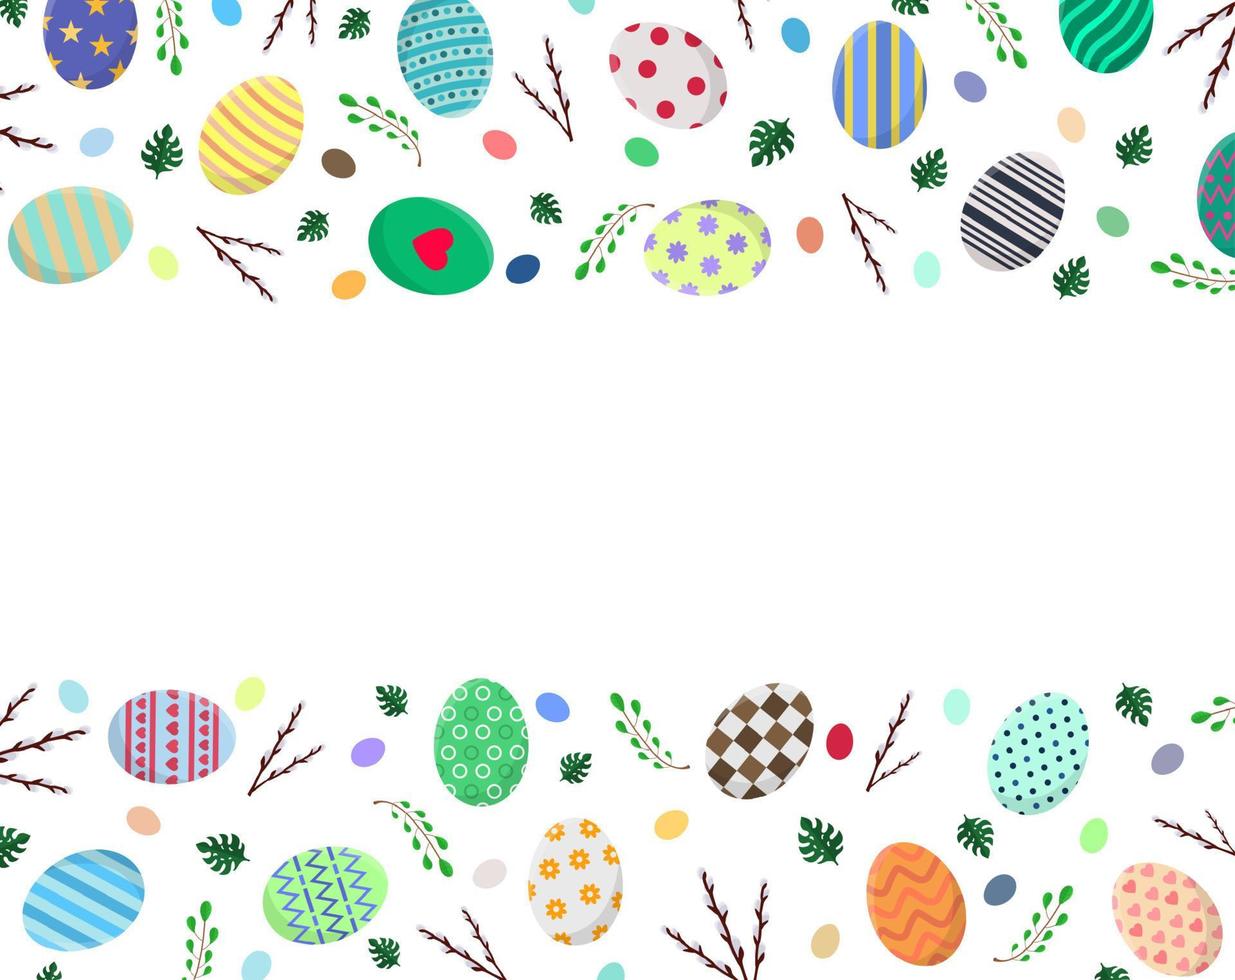 påsk vykort mall med påskägg, pil grenar, monstera blad. för hälsning eller inbjudan. vektor illustration för din design, webb.